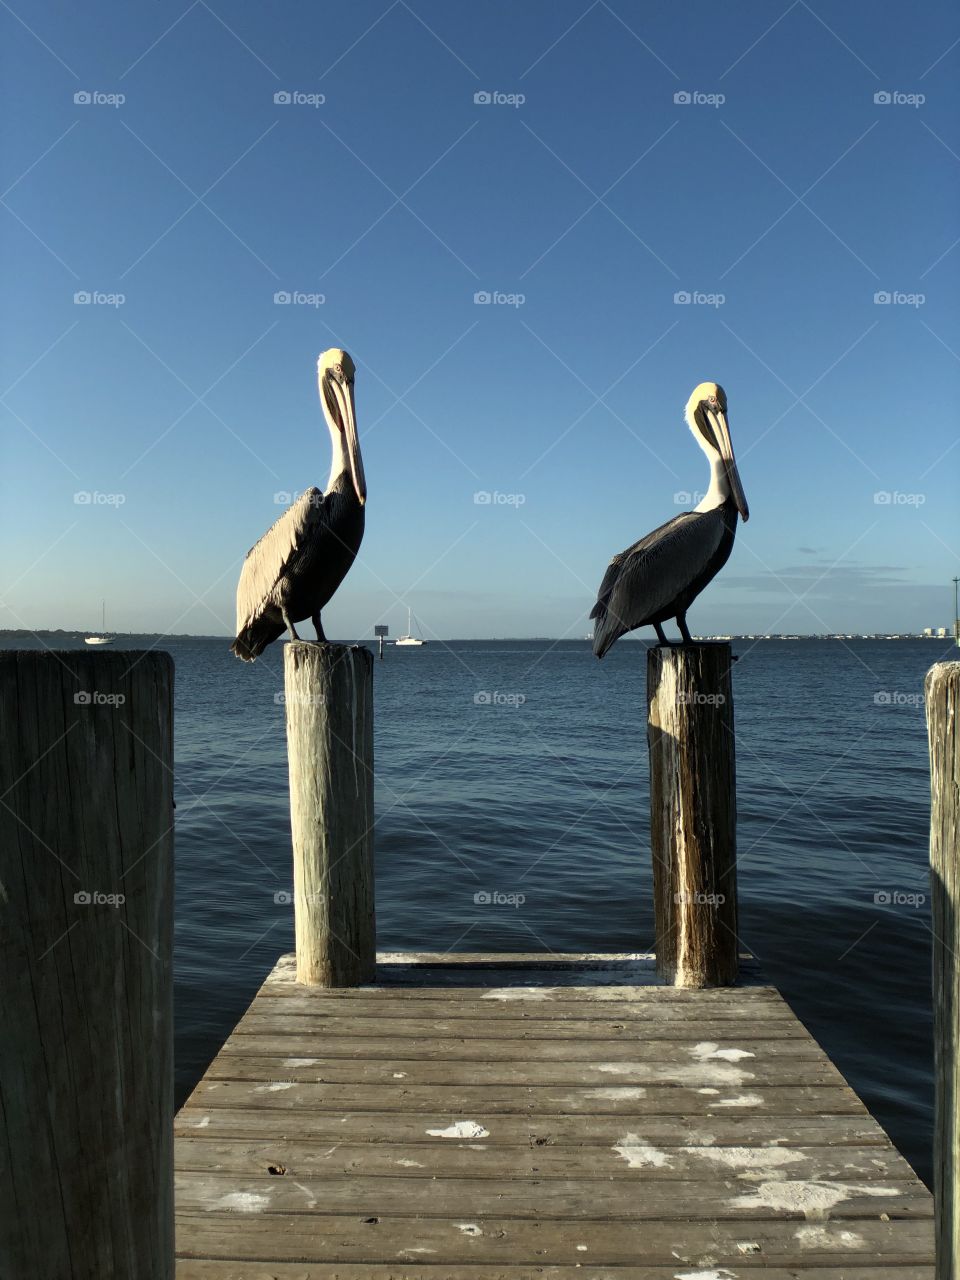 Birds on a dock 